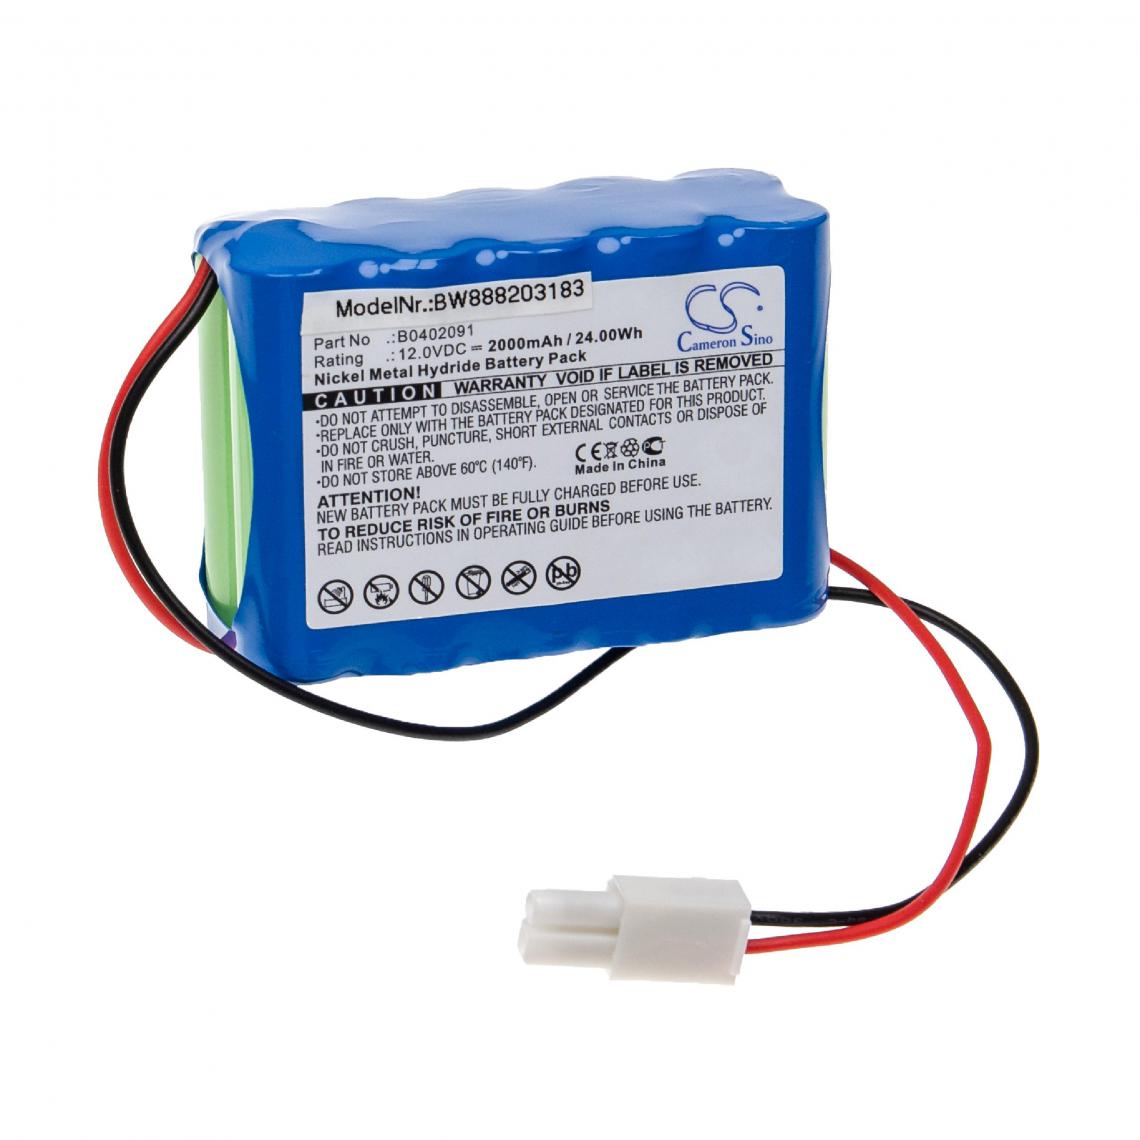 Vhbw - vhbw Batterie compatible avec Aeonmed Solo, Solo Ventilator appareil médical (2000mAh, 12V, NiMH) - Piles spécifiques